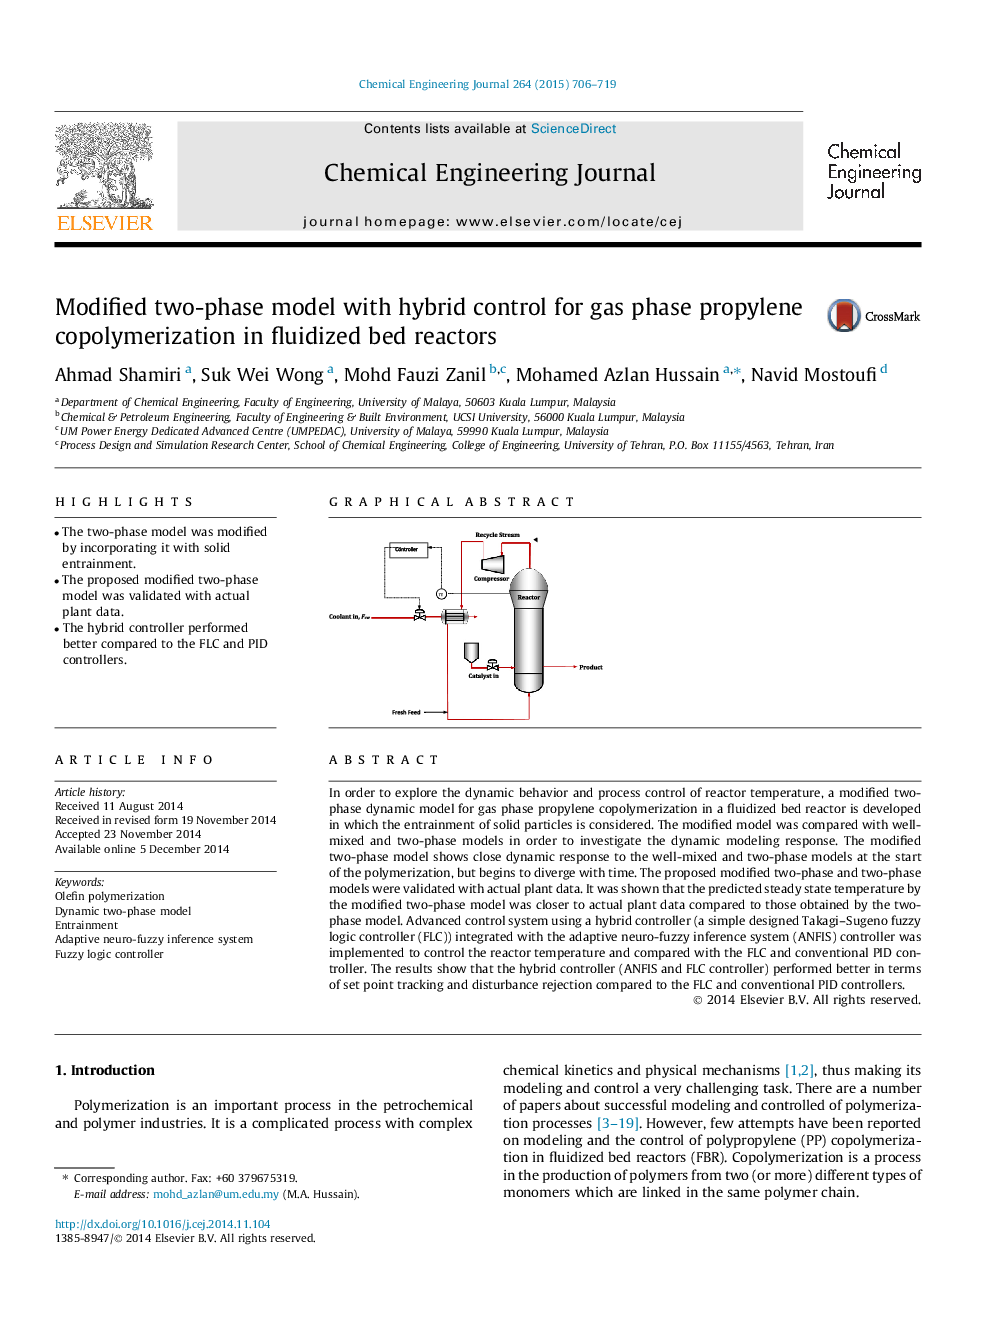 مدل دو مرحلهای اصلاح شده با کنترل ترکیبی برای کوپلیمرازی پروپیلن فاز گاز در راکتورهای مایع ذوب شده 